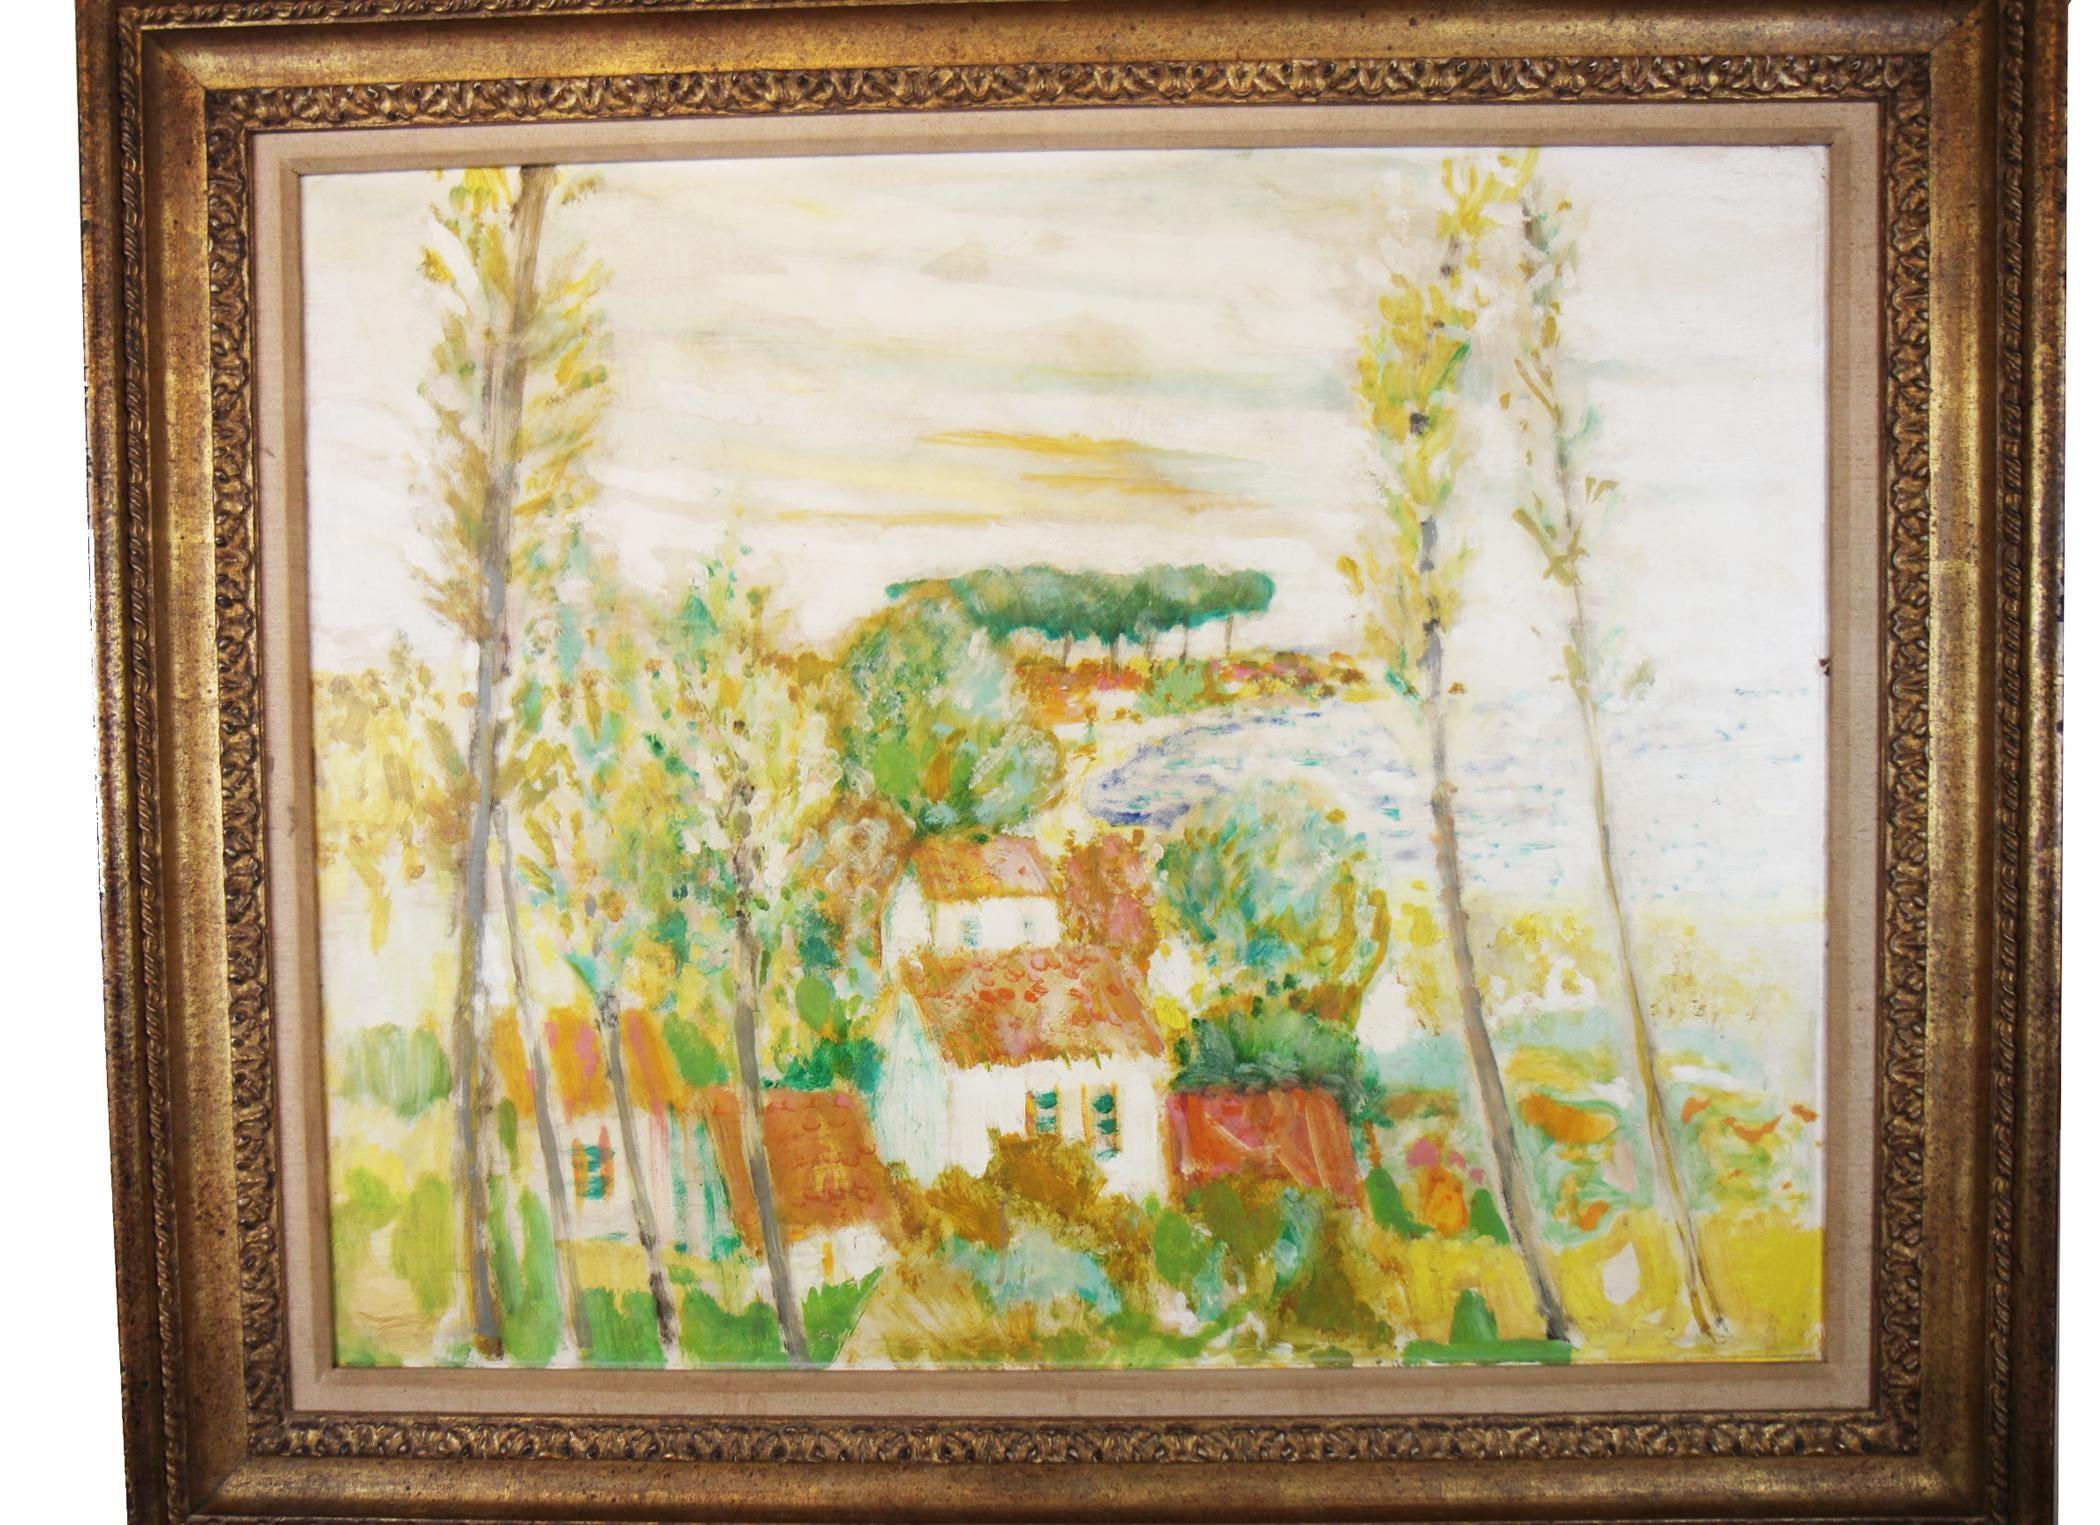 Gilmour signierte impressionistische Landschaft in Grün-, Orange- und Gelbtönen. Ungerahmte Abmessungen: 31.5